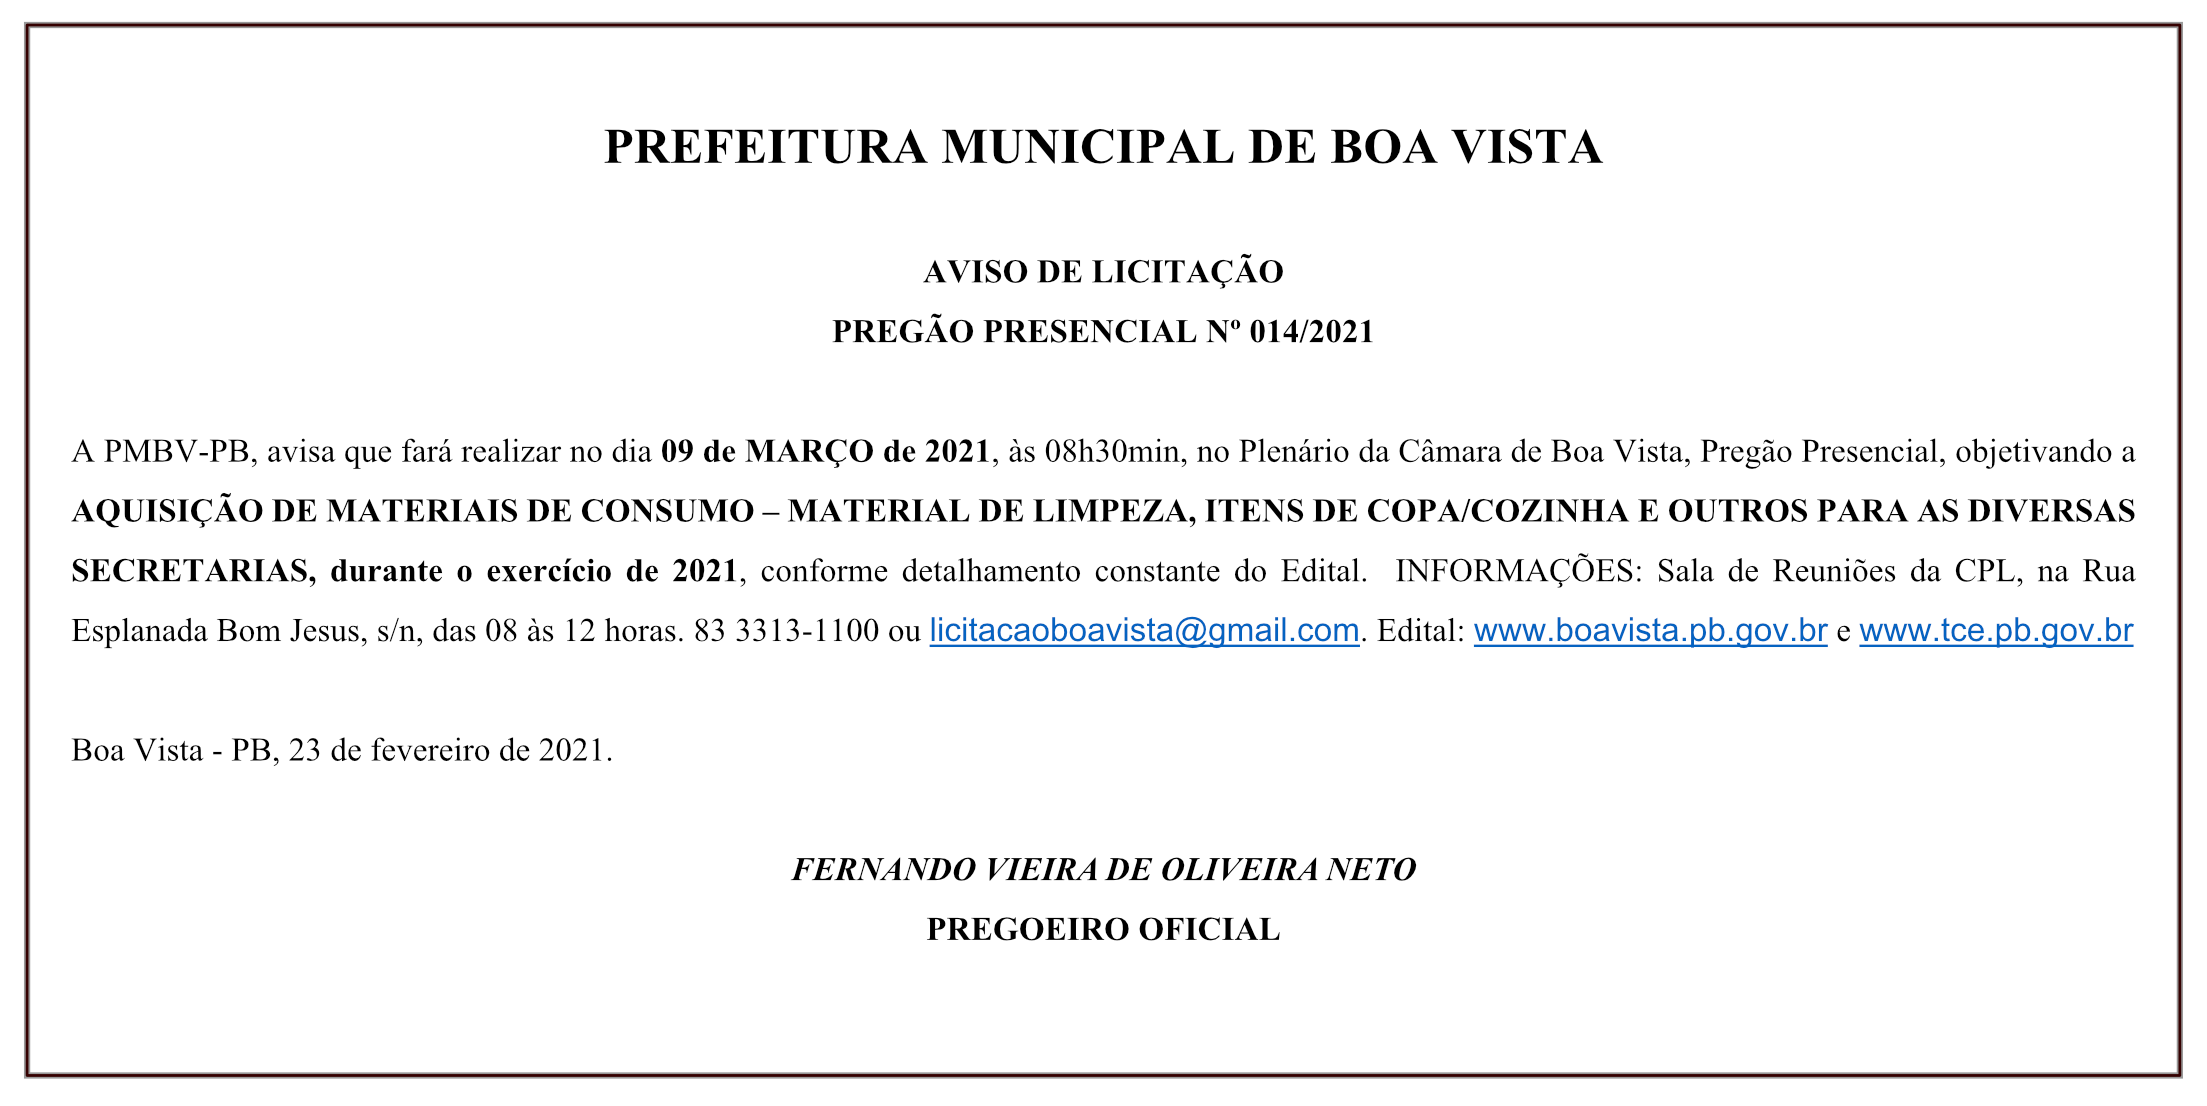 PREFEITURA MUNICIPAL DE BOA VISTA – AVISO DE LICITAÇÃO – PREGÃO PRESENCIAL Nº 014/2021